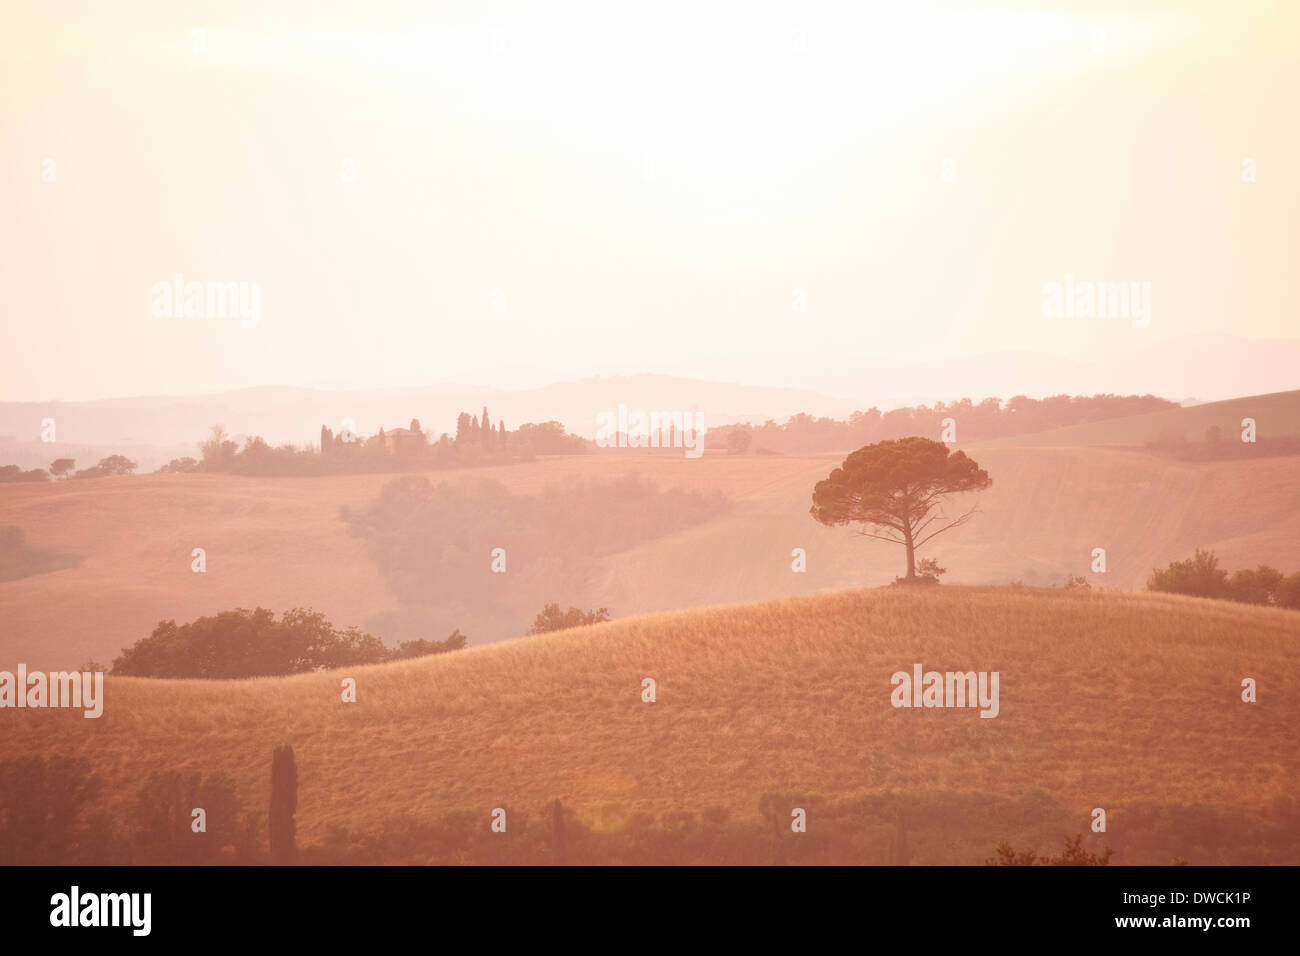 Rural landscape, Tuscany, Italy Stock Photo